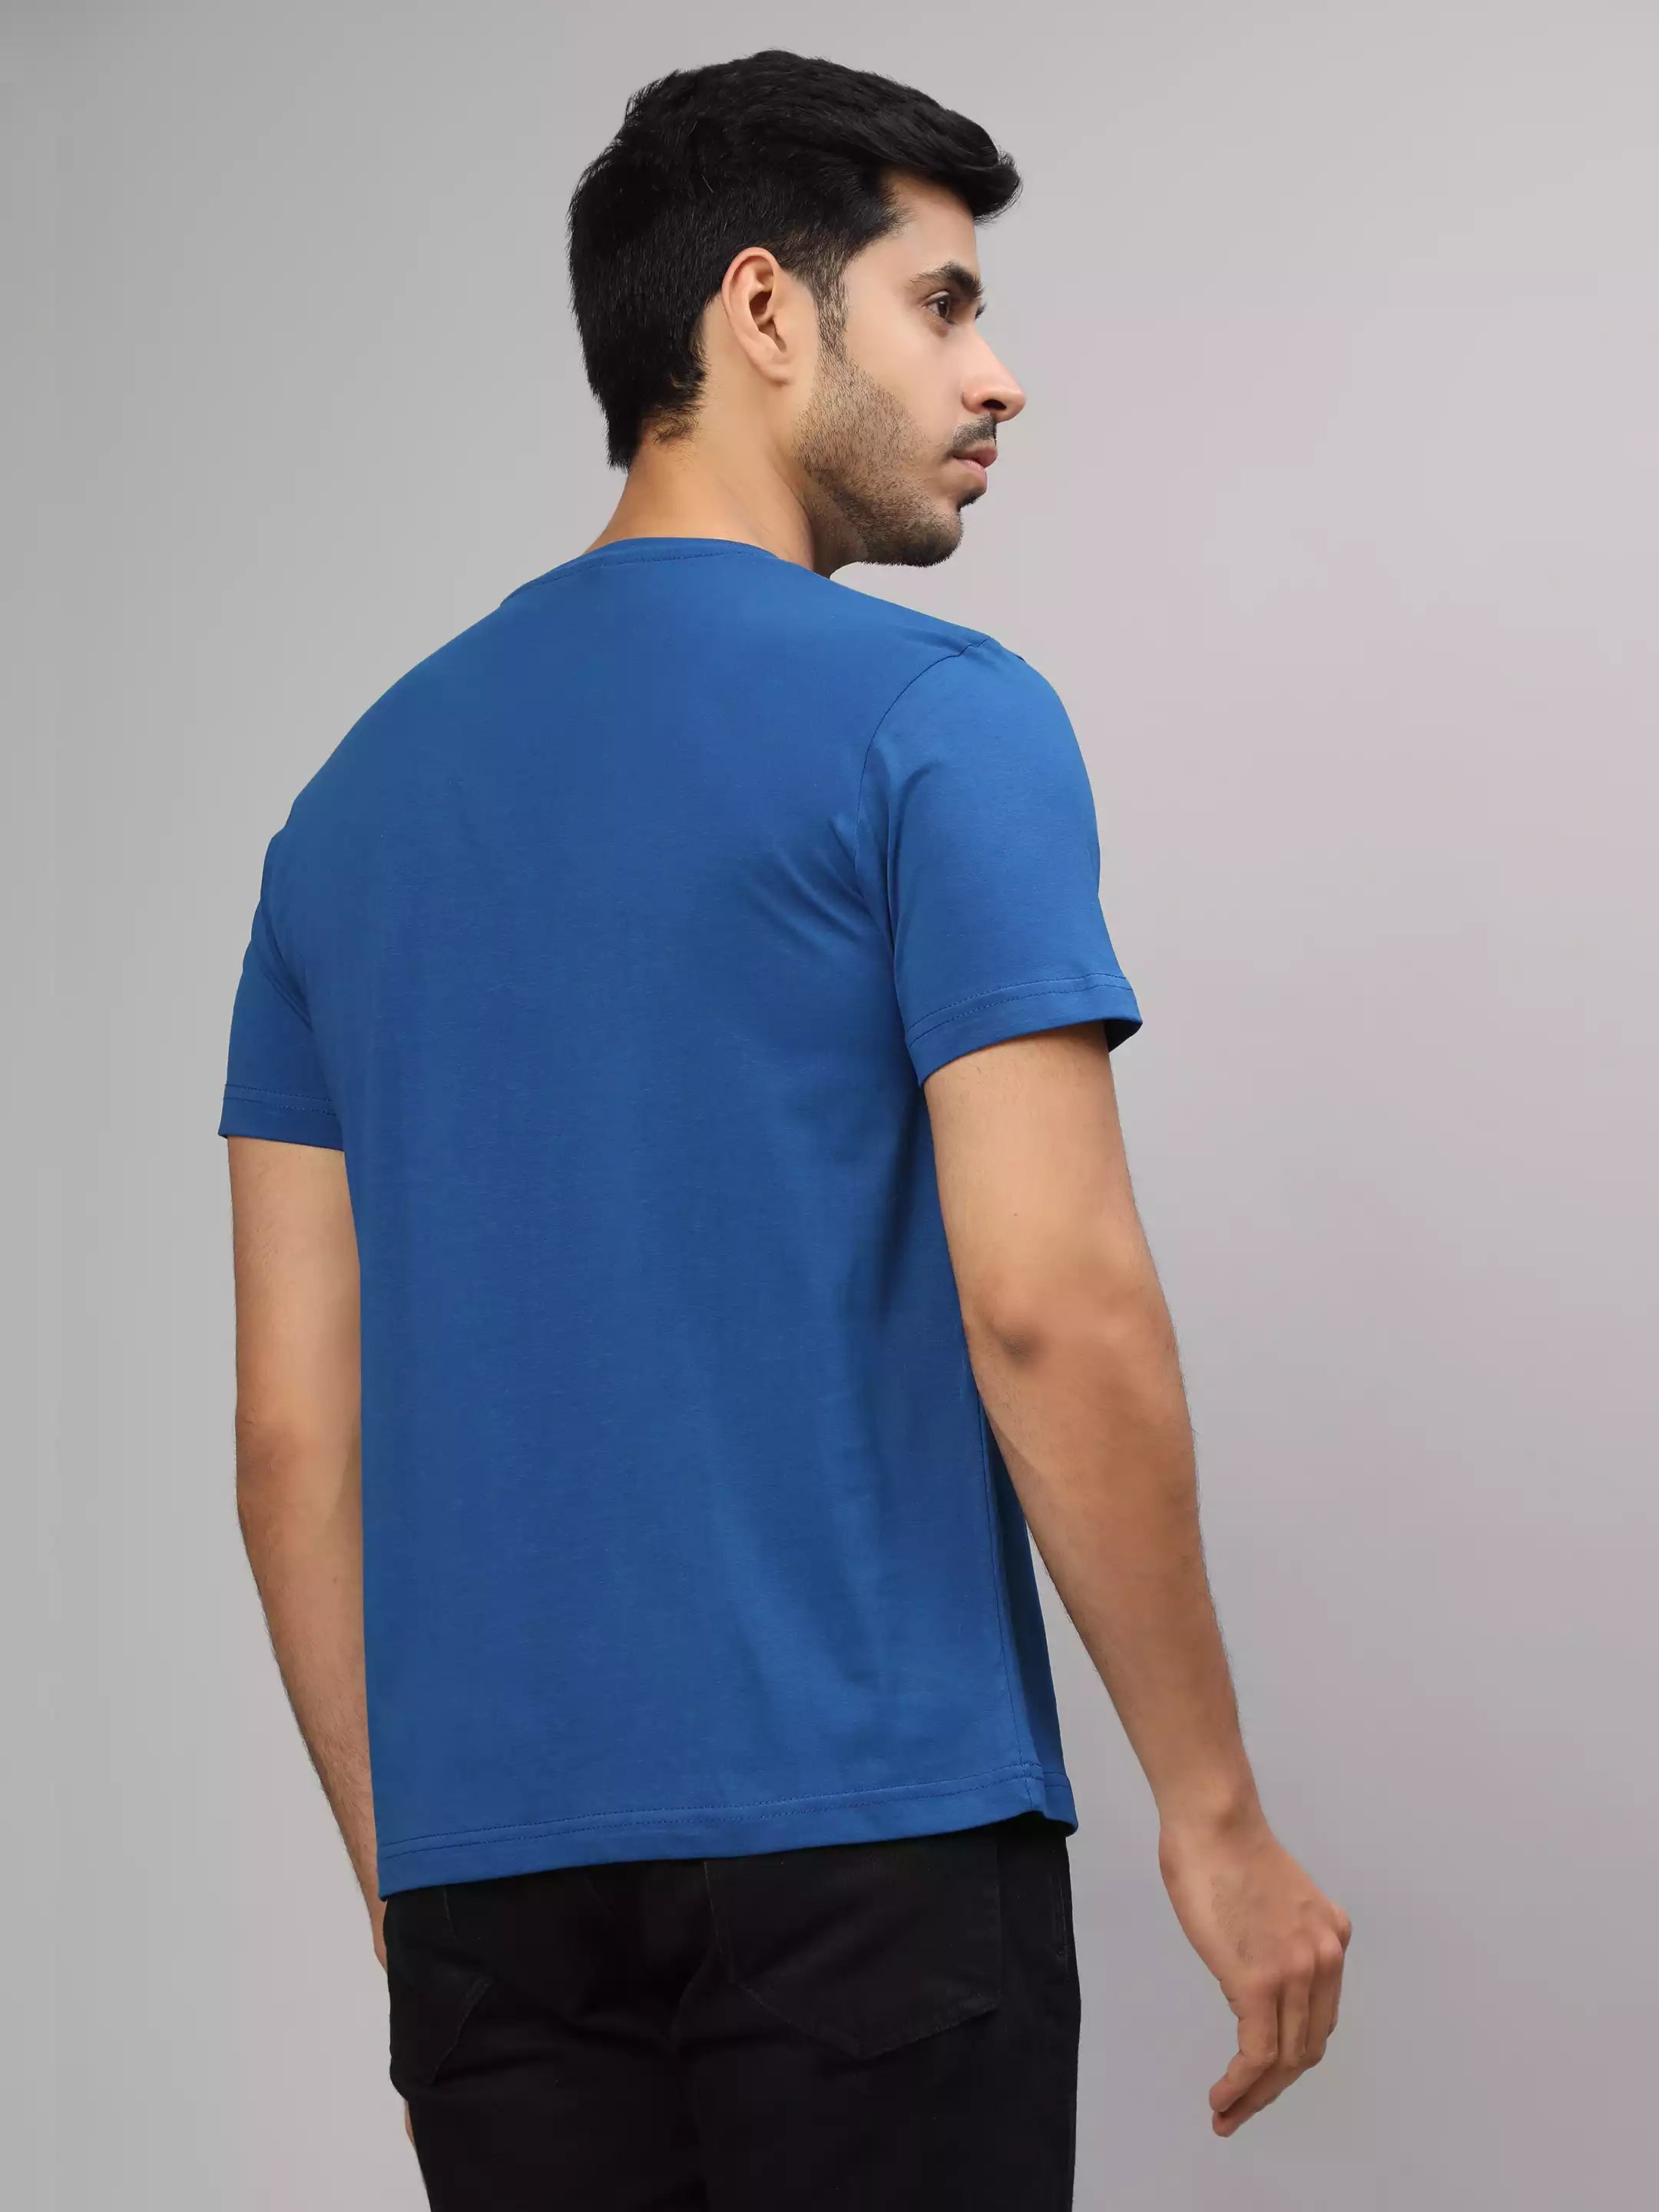 iHope - Sukhiaatma Unisex Graphic Printed Royal Blue T-shirt